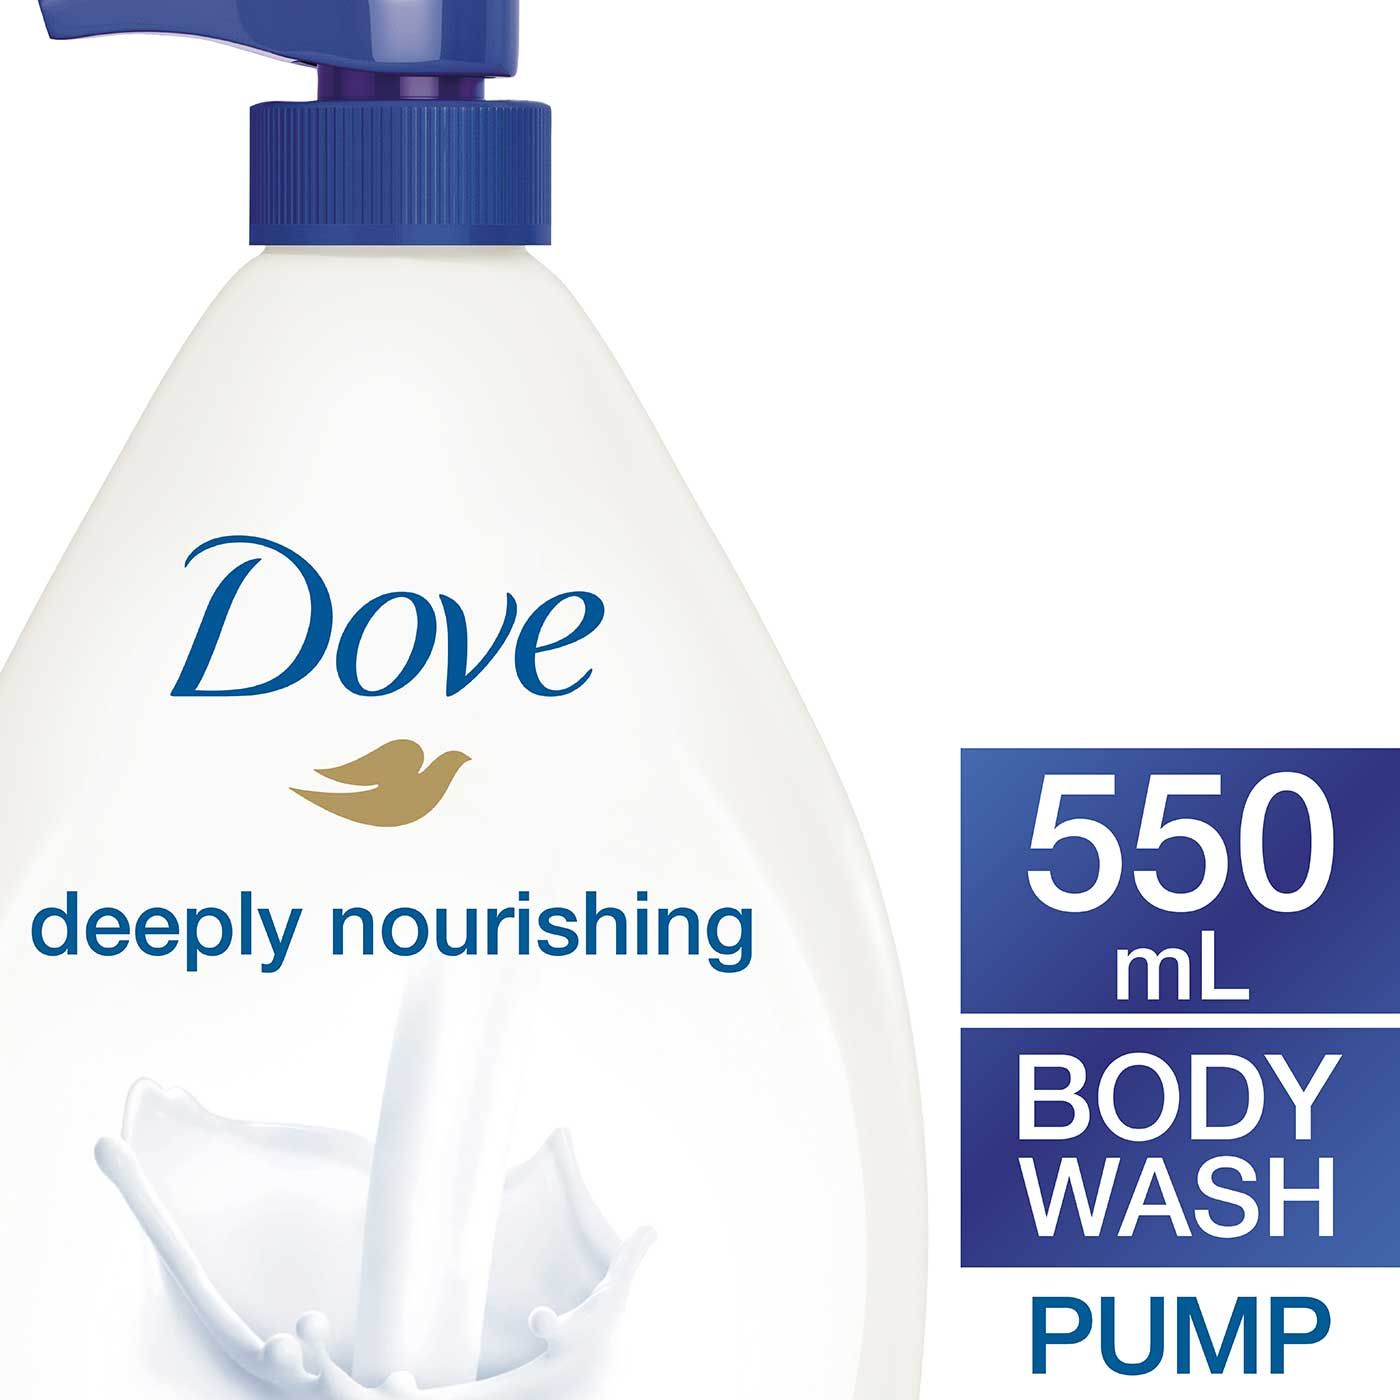 Dove Deeply Nourishing Sabun Cair Pump 550ml - 2